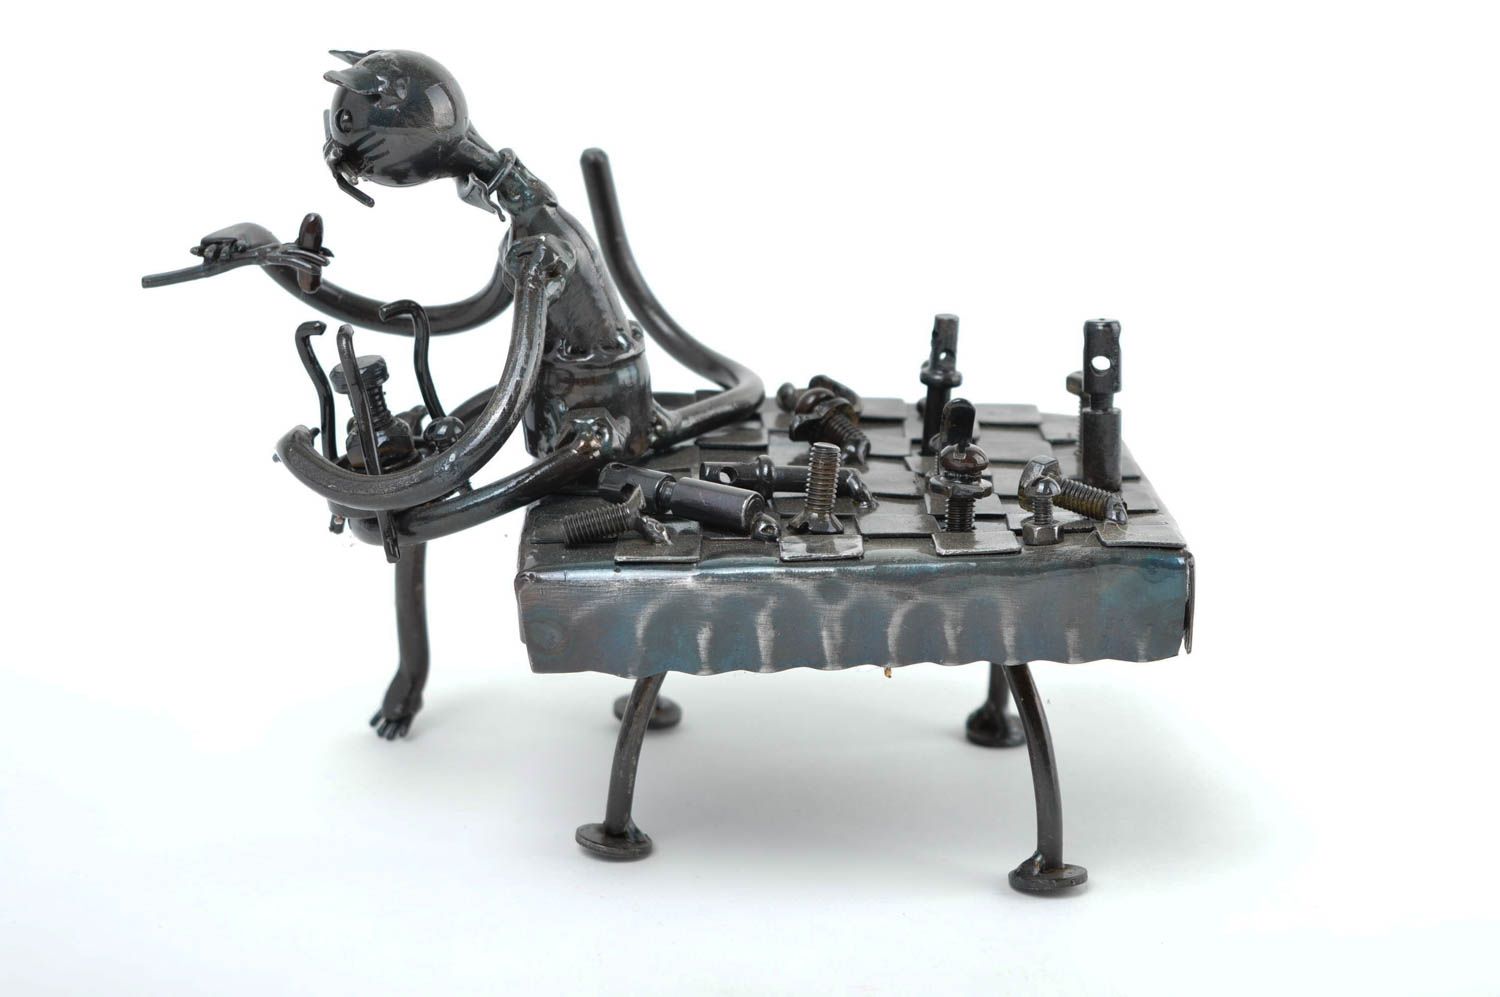 Unusual handmade metal figurine table decor ideas metal craft decorative use photo 3